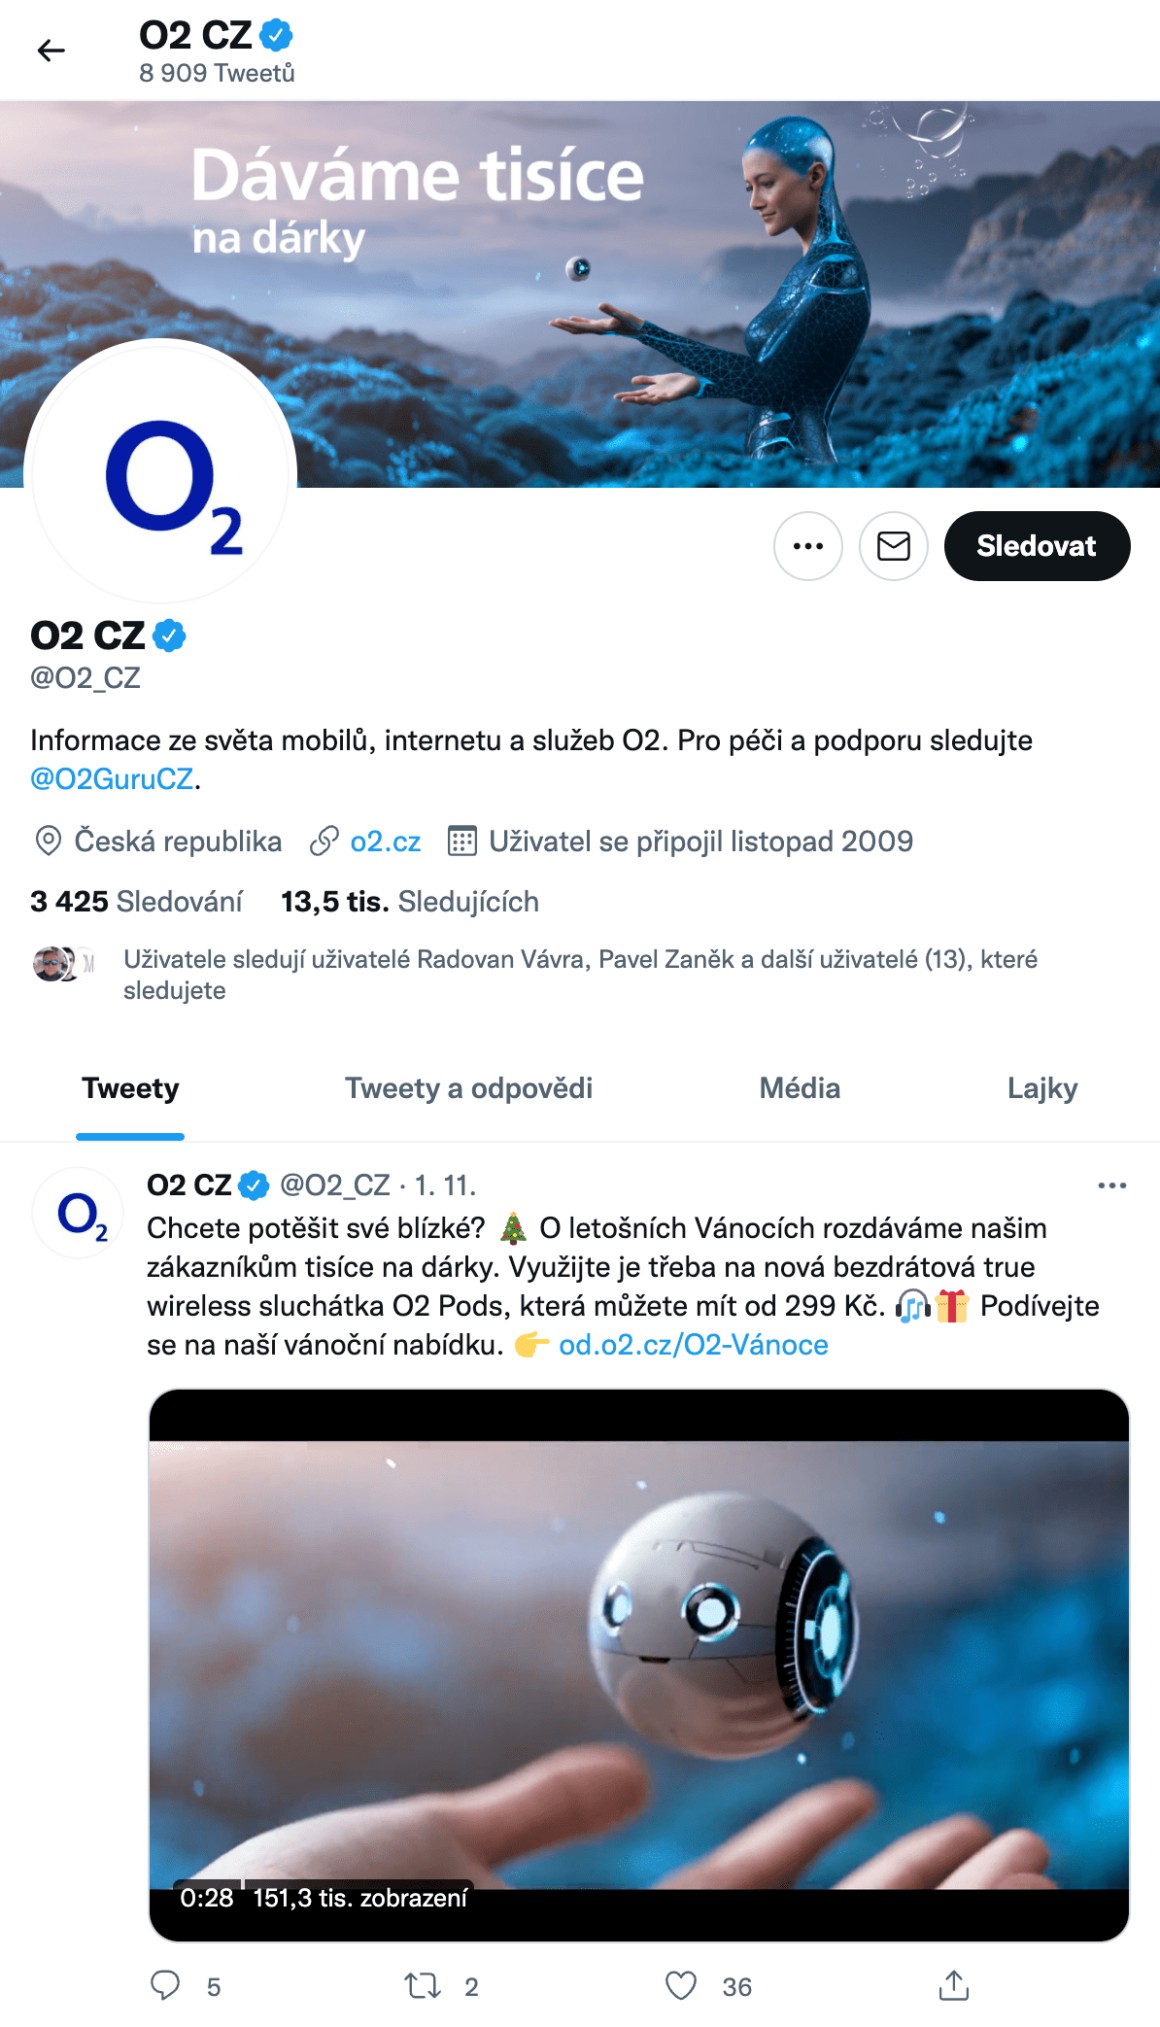 Twitter profil firmy O2 je také velice povedený, U O2 je vidět, že Twtiter bere vážně a že na Twitteru komunikuje spoustu svých kampaní a podporuje vypublikované příspěvky.